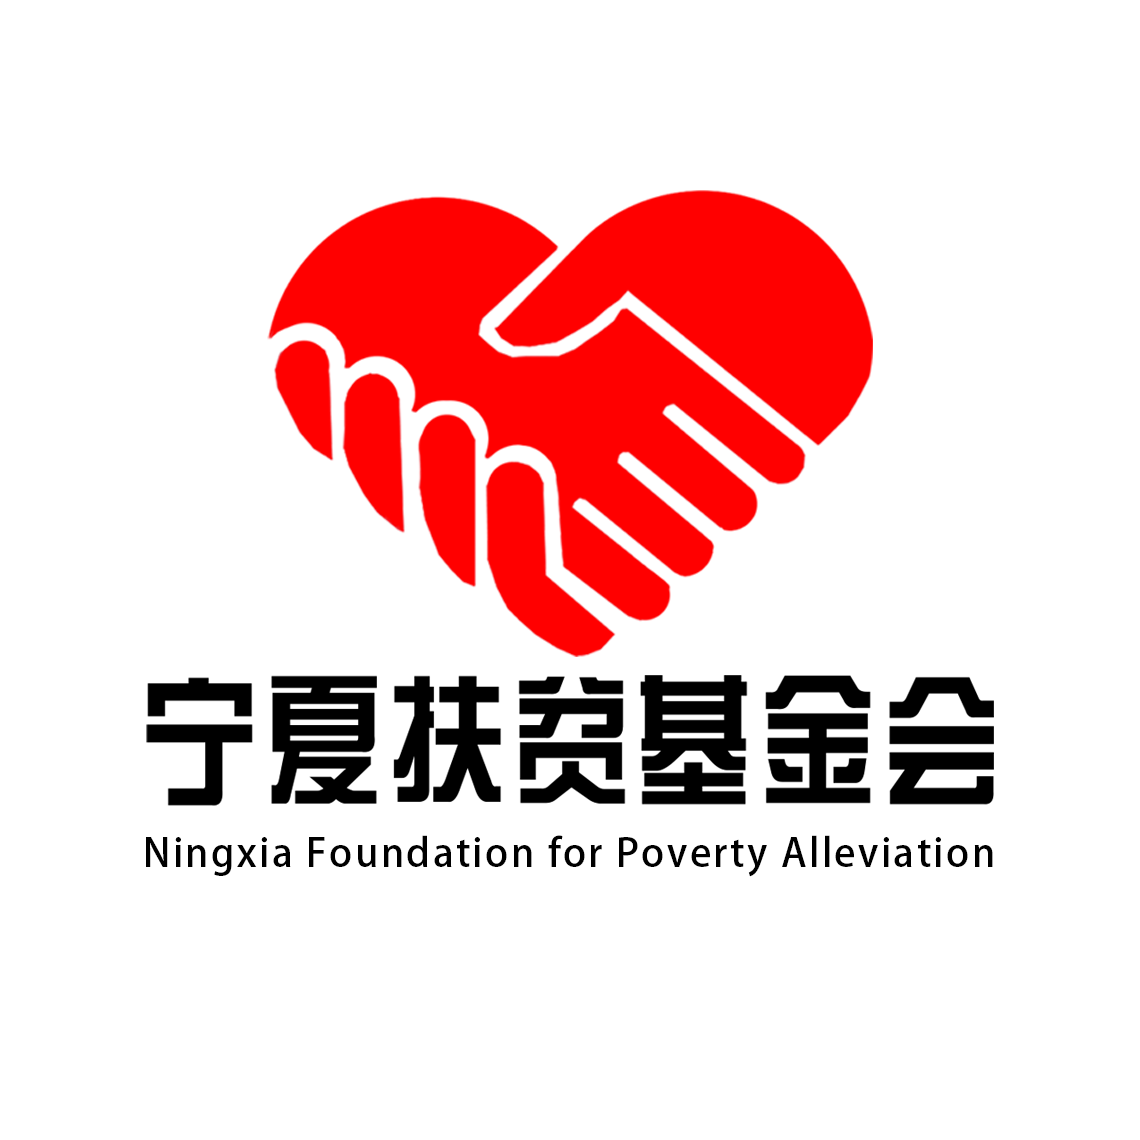 寧夏扶貧基金會